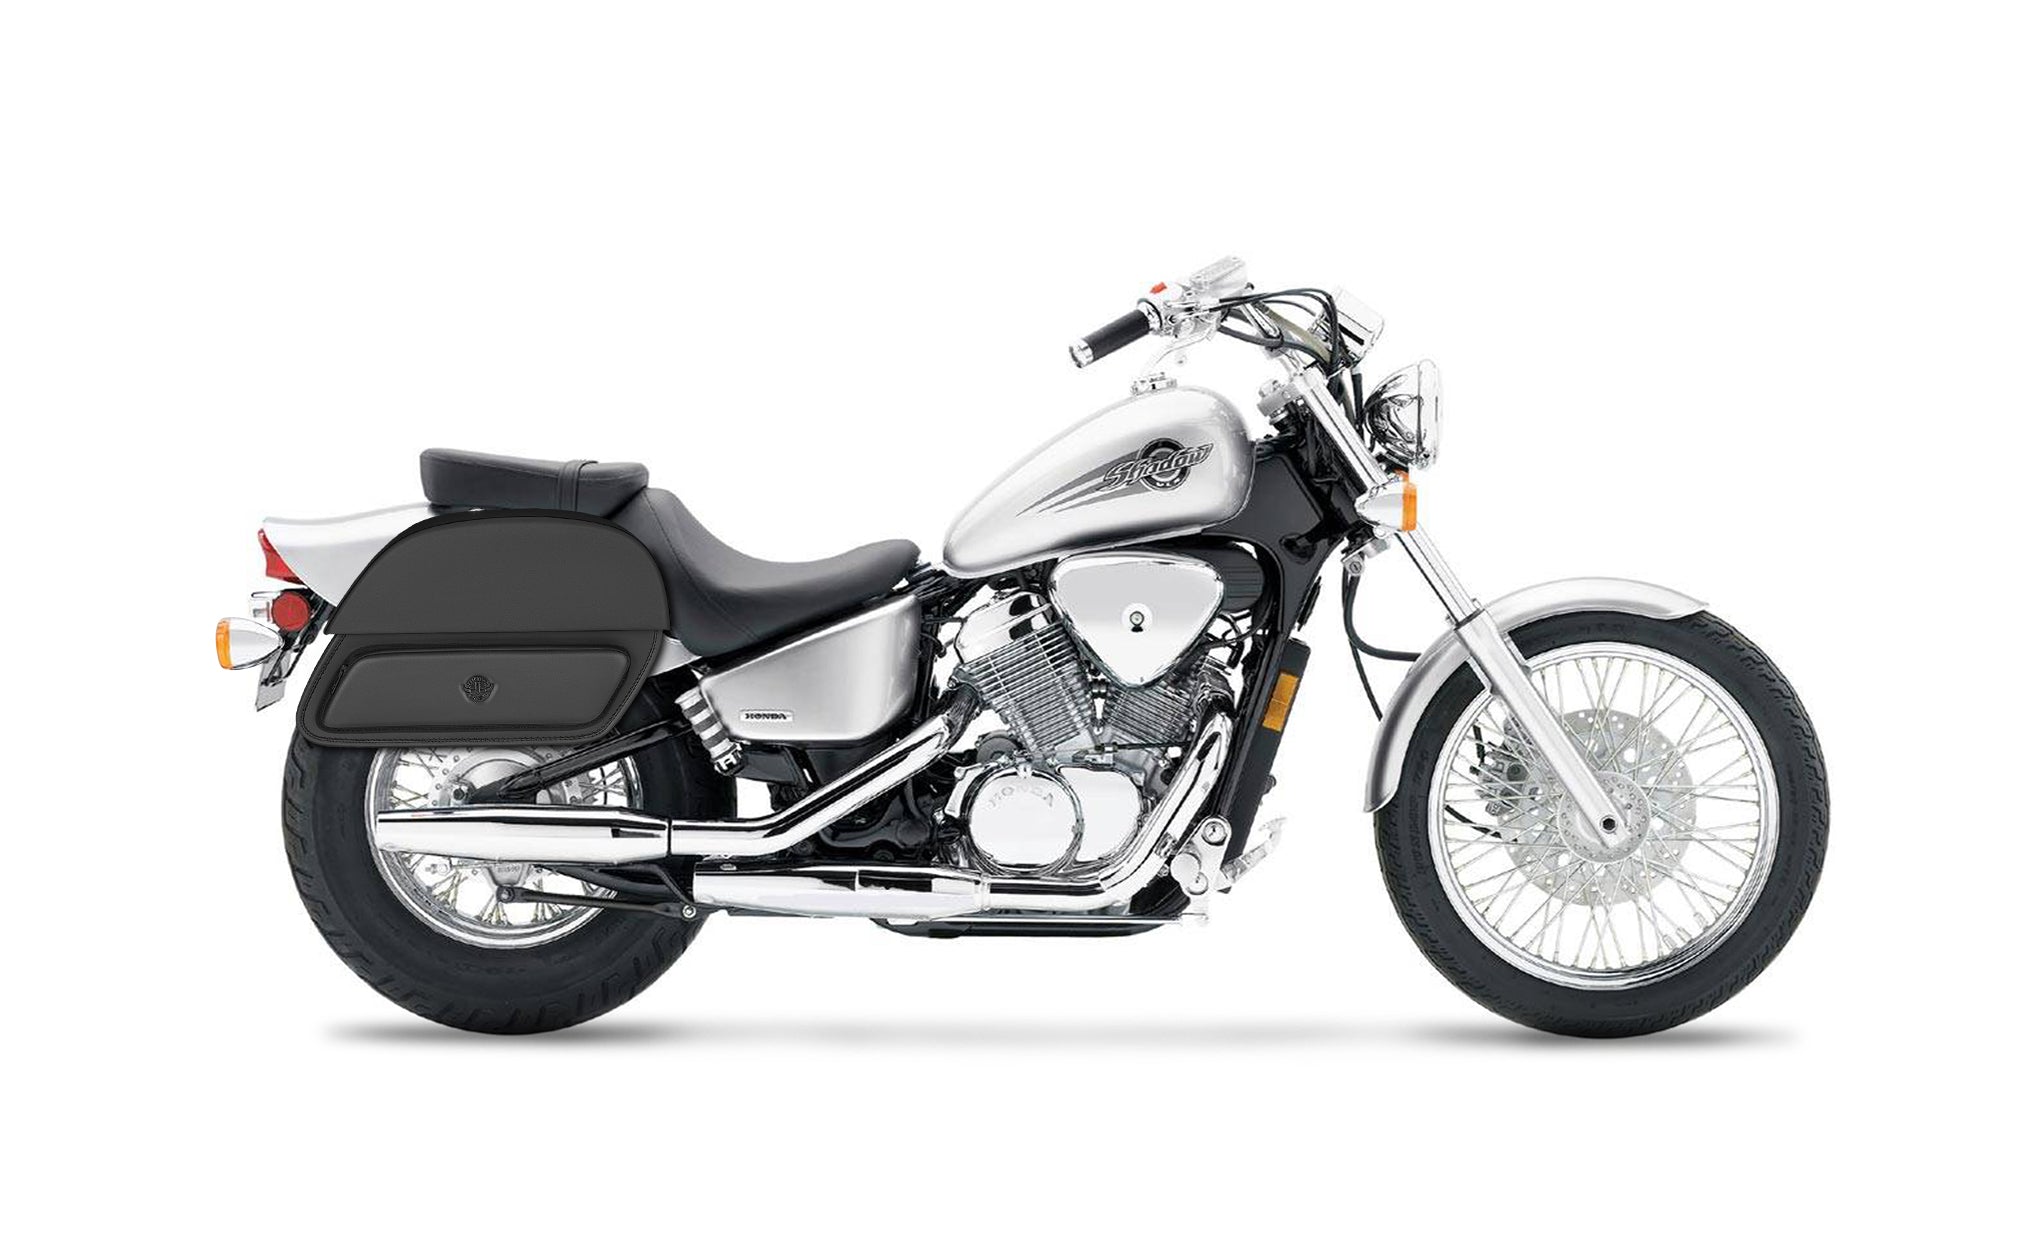 28L - Pantheon Medium Shadow 600 VLX Motorcycle Saddlebags on Bike Photo @expand